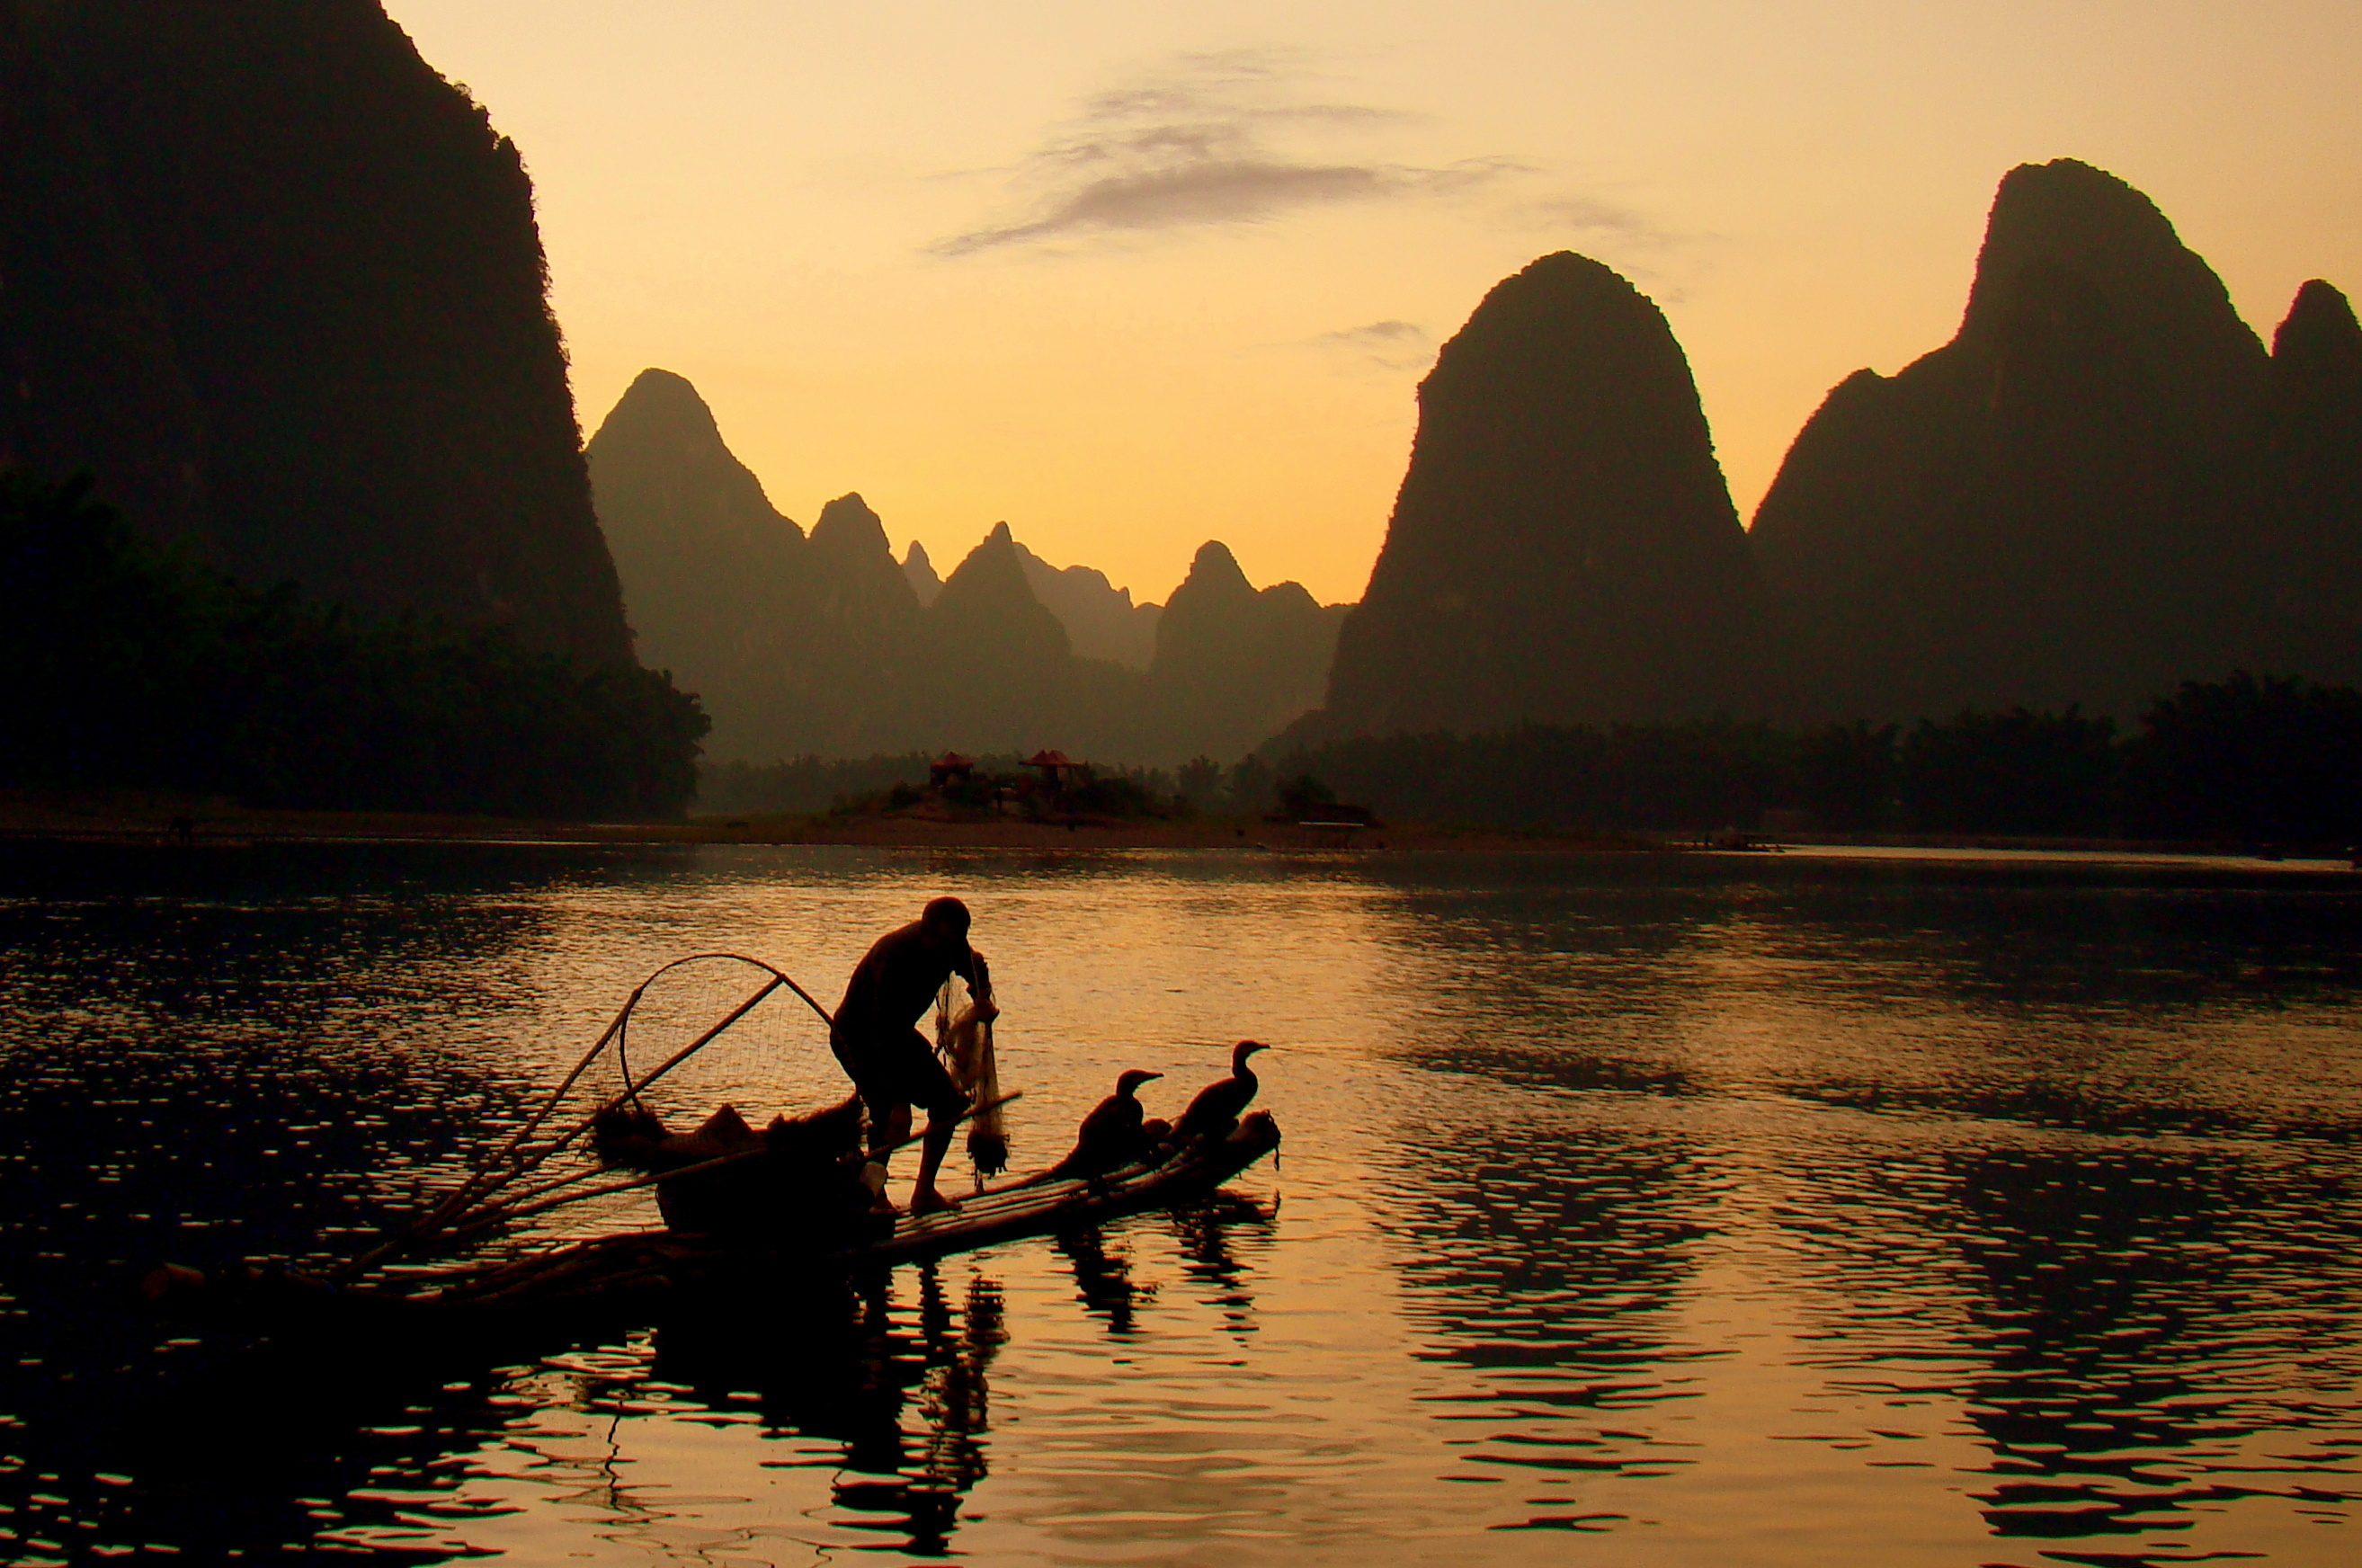 Guilin Li River National Park, Flowing river, Tourism industry impact, Colorful landscapes, 2630x1750 HD Desktop